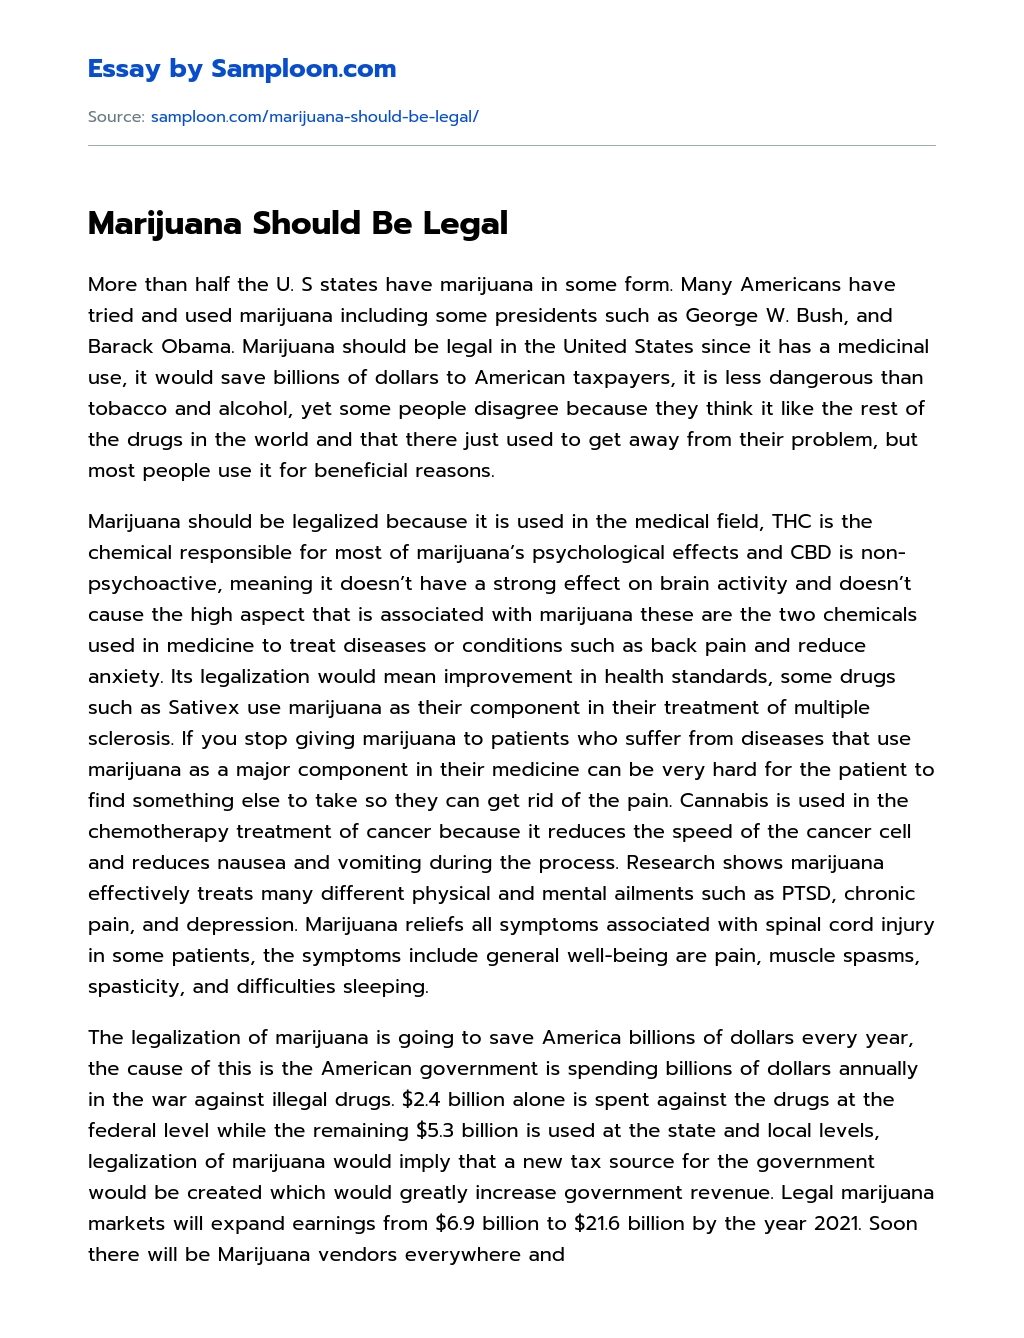 Marijuana Should Be Legal  essay